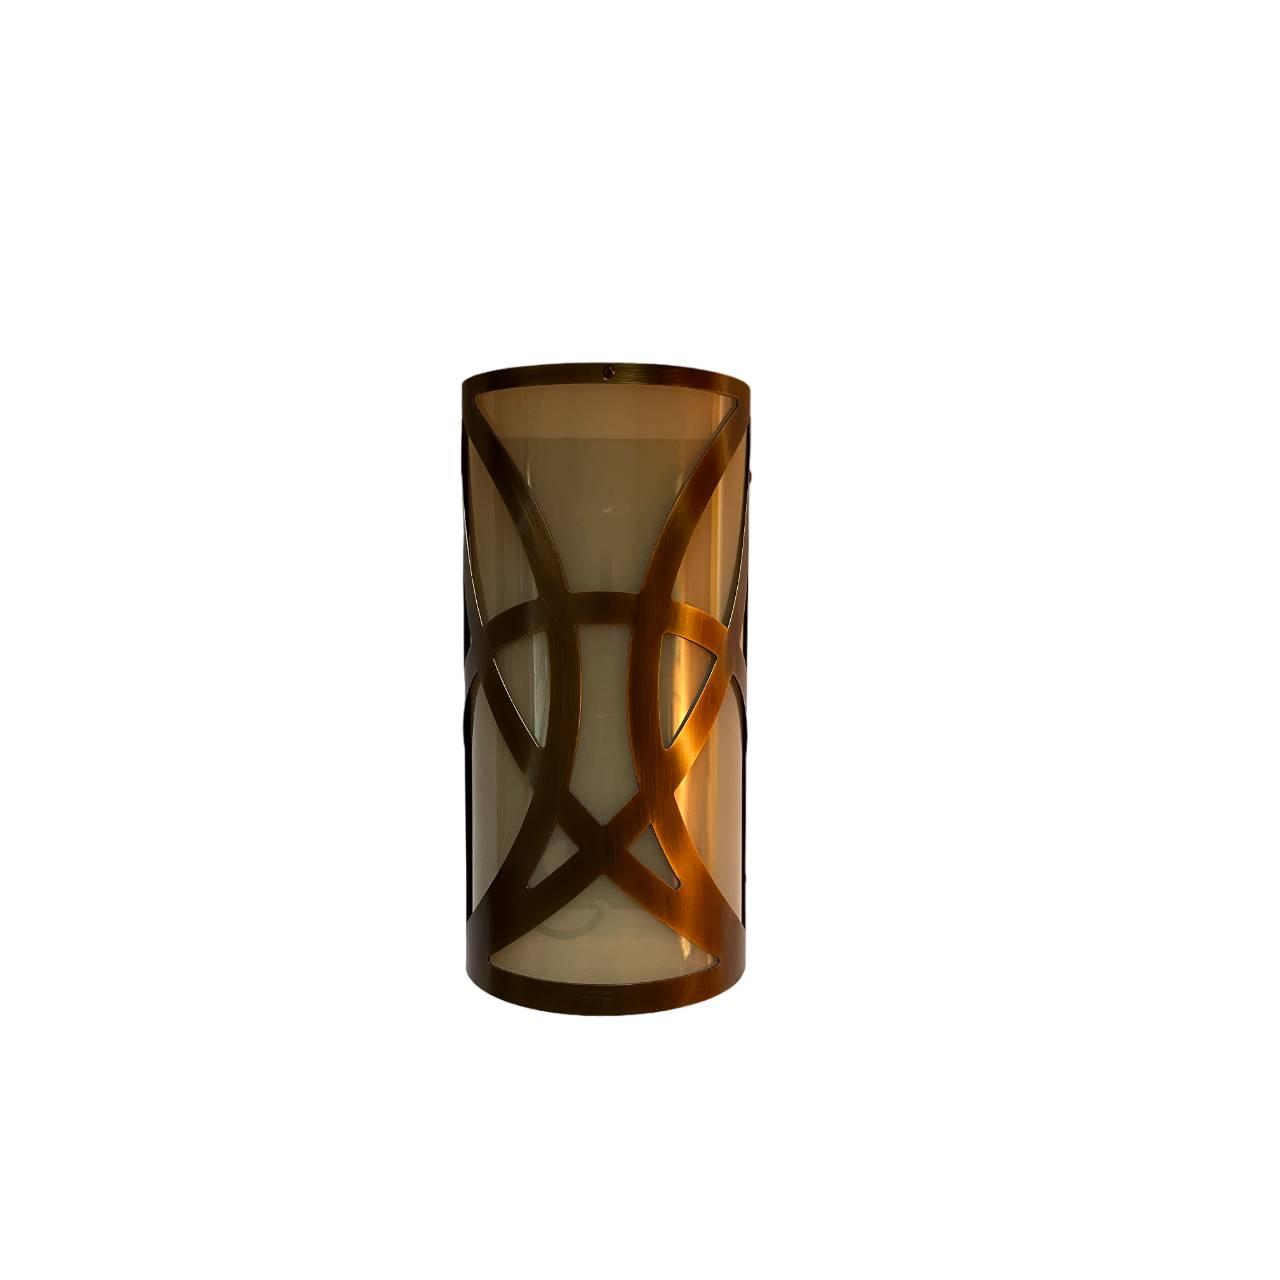 ArteLights Zidna lampa, 90x140x290mm, Bronza